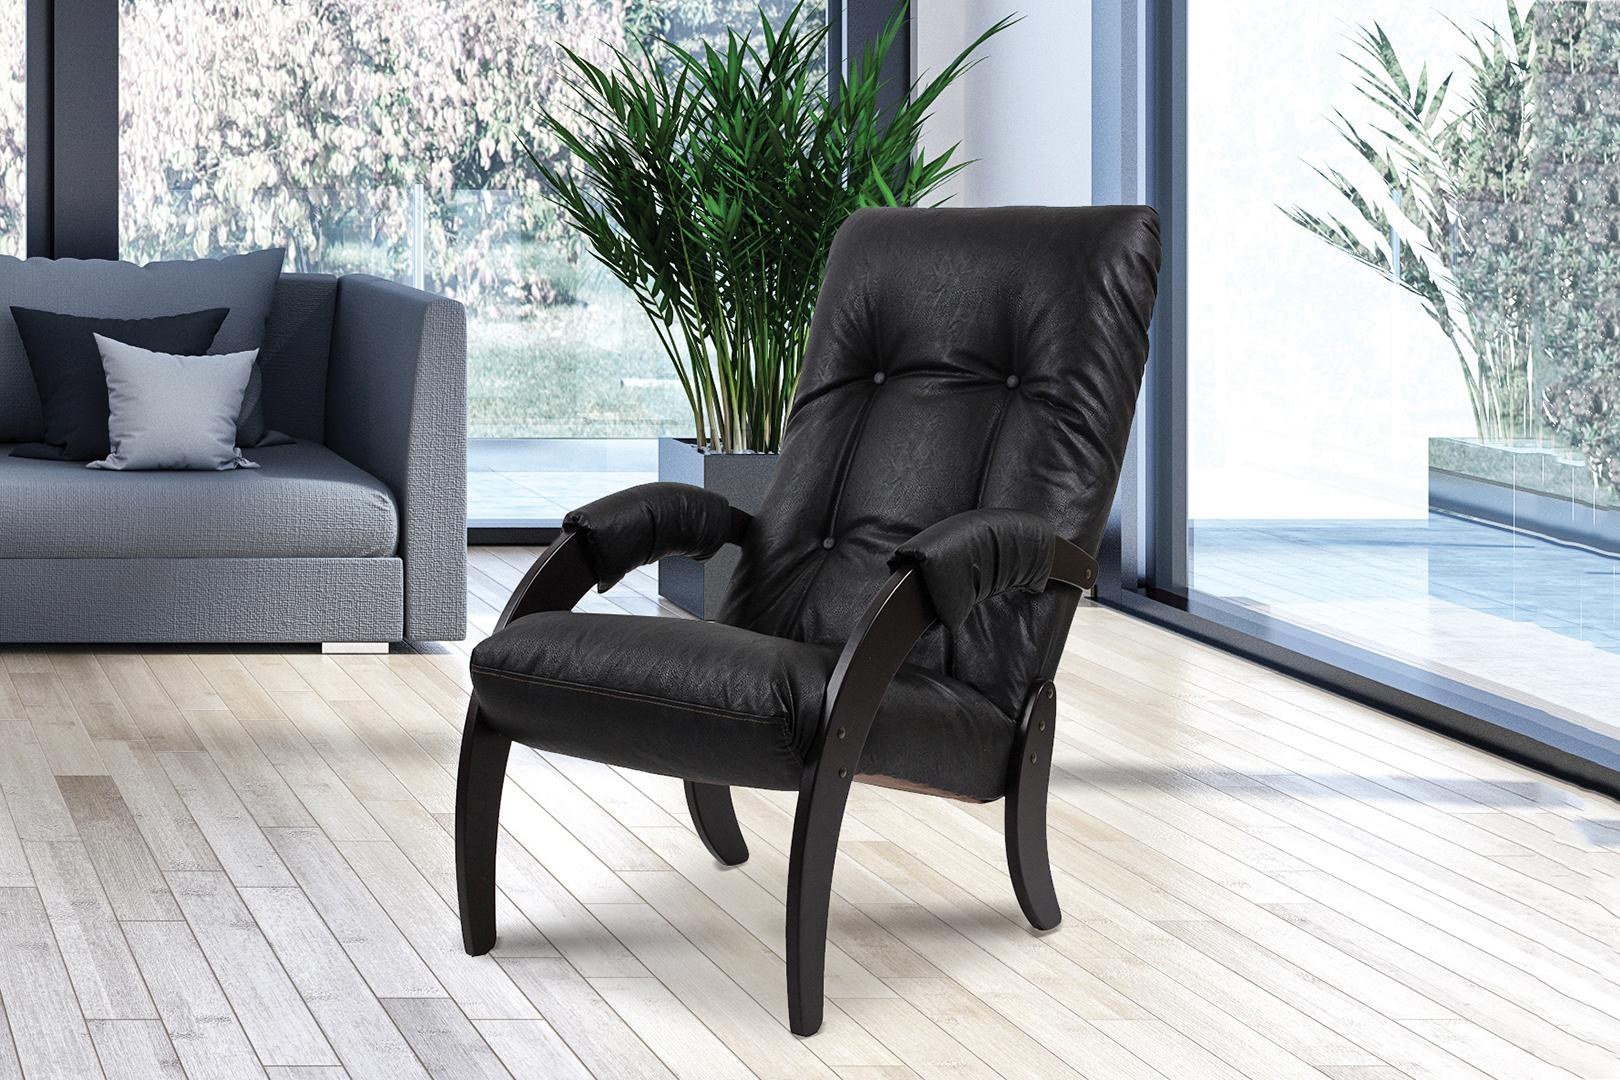 Импекс мебель сайт. Кресло для отдыха модель 61 (венге, ткань Verona Brown). Кресло 61 Импекс. Импекс кресло для отдыха комфорт венге модель 61. Кресло Импэкс модель 61.